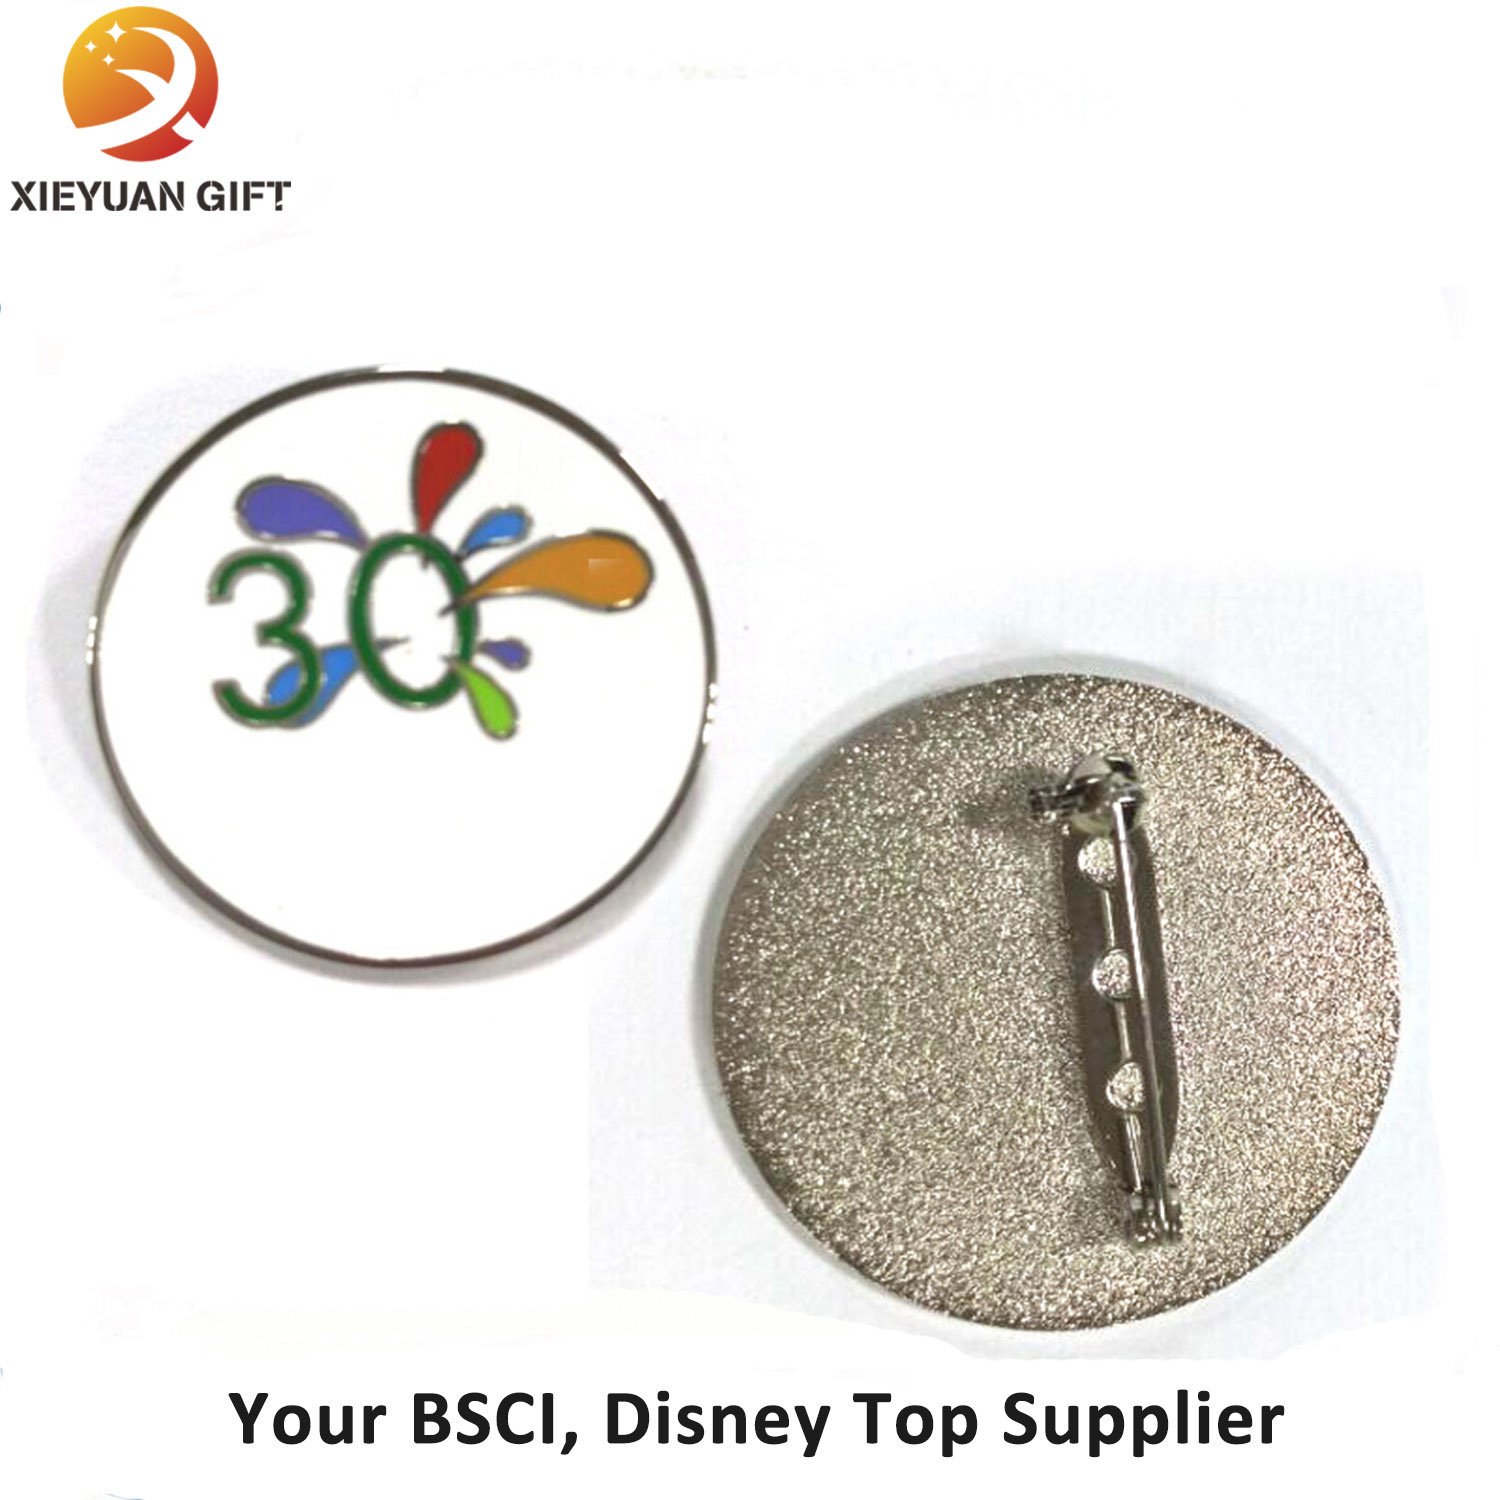 Souvenir Synthetic Enamel Badge Clip Safety Pin